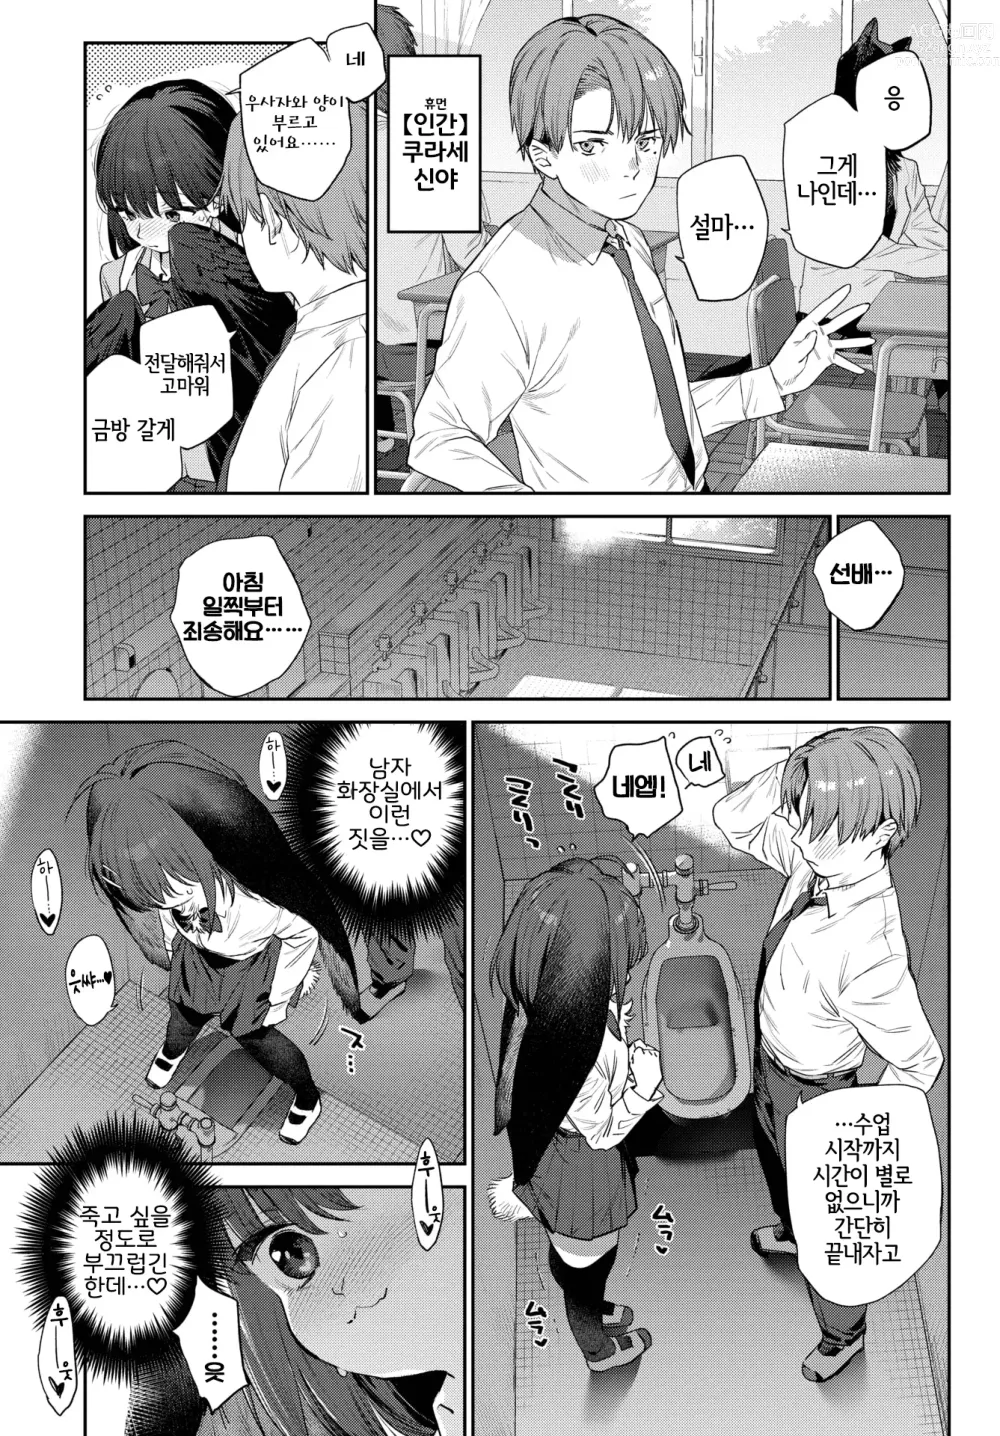 Page 5 of manga 발정인외일지 1페이지째